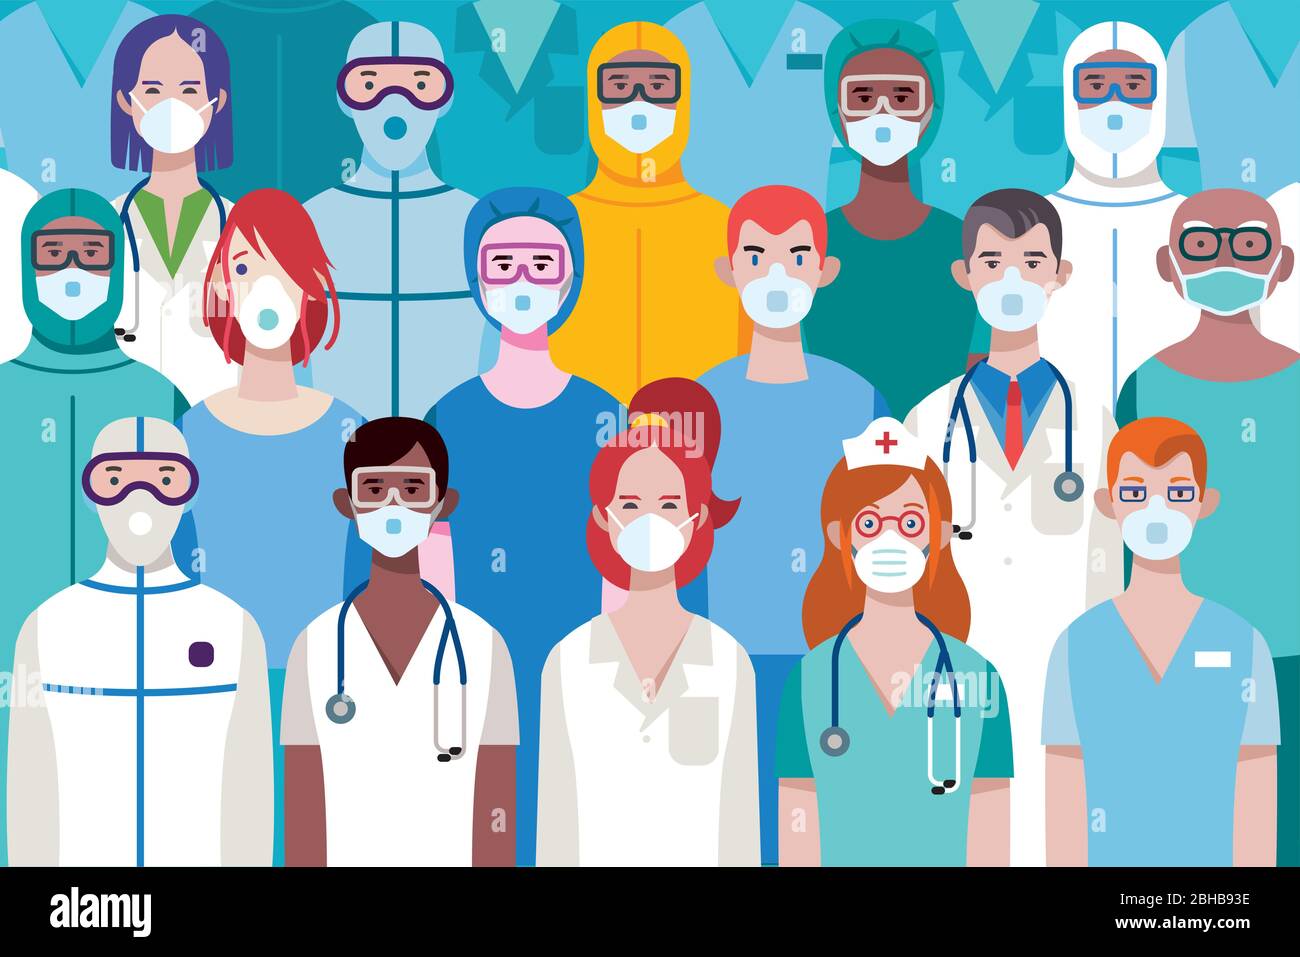 Team di medici o infermieri femminili e maschili che indossano diversi equiment di protezione personale per lavorare in un ospedale per combattere contro il virus covid-19. Illustrazione Vettoriale